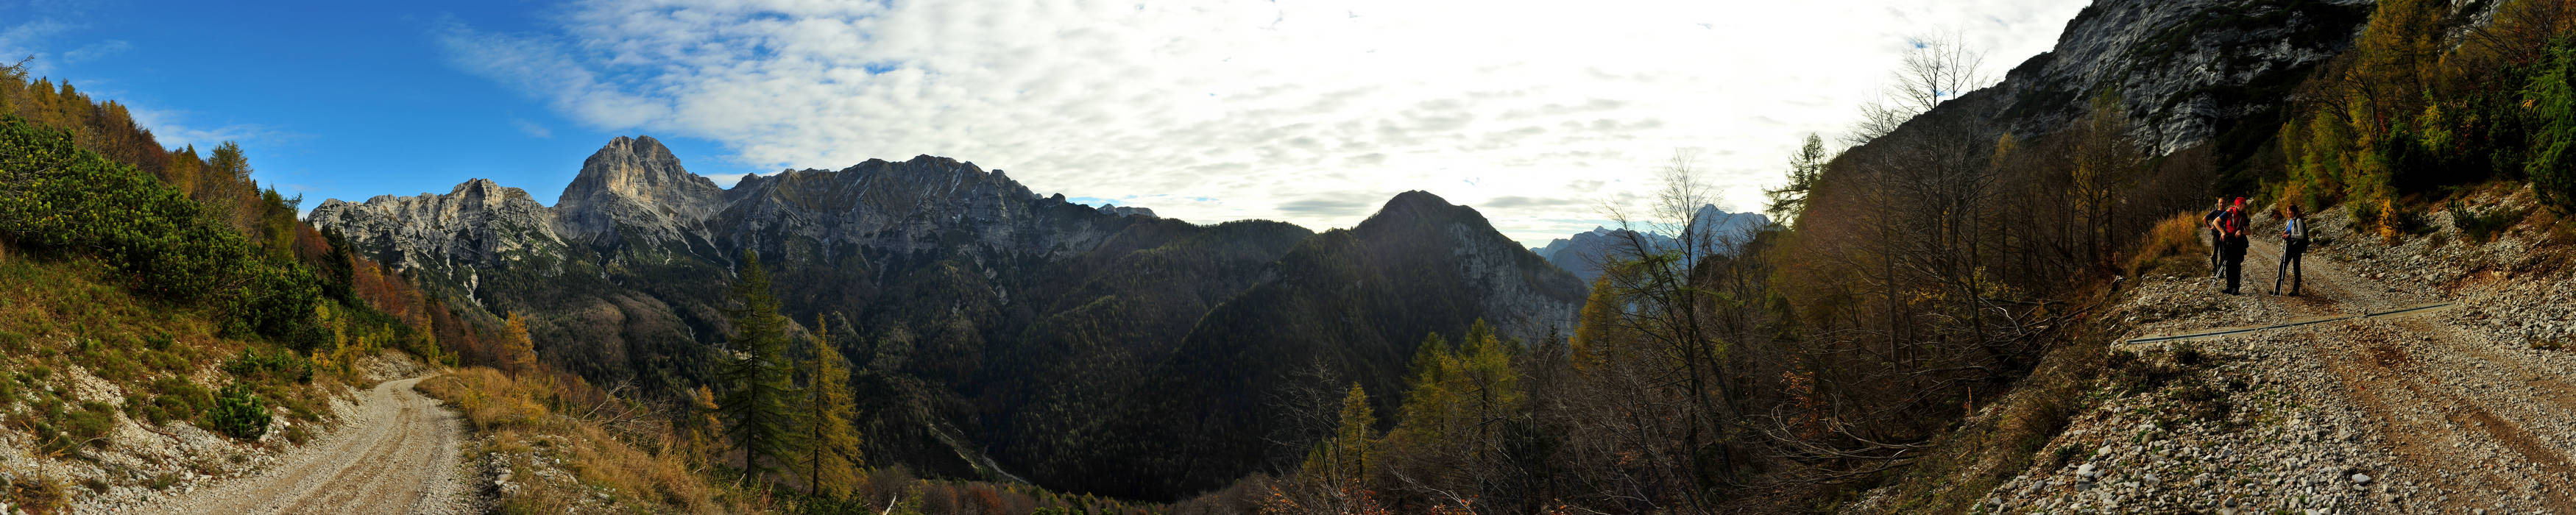 Dolomiti Friulane, lungo la stradina per Cava Buscada in Val Zemola